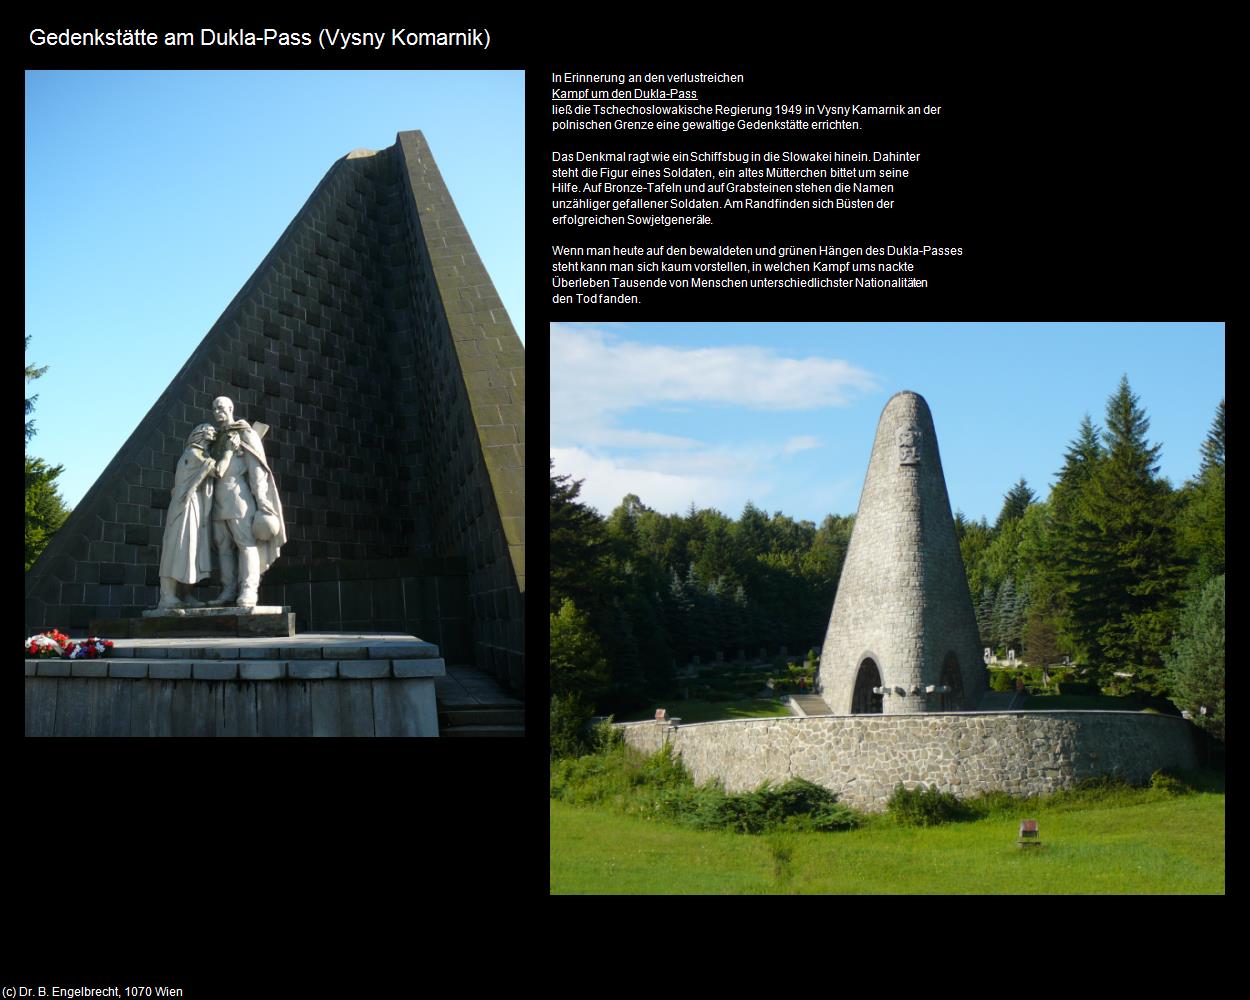 Gedenkstätte am Dukla-Pass  (Vysny Komarnik|Dukla-Pass) in SLOWAKEI(c)B.Engelbrecht